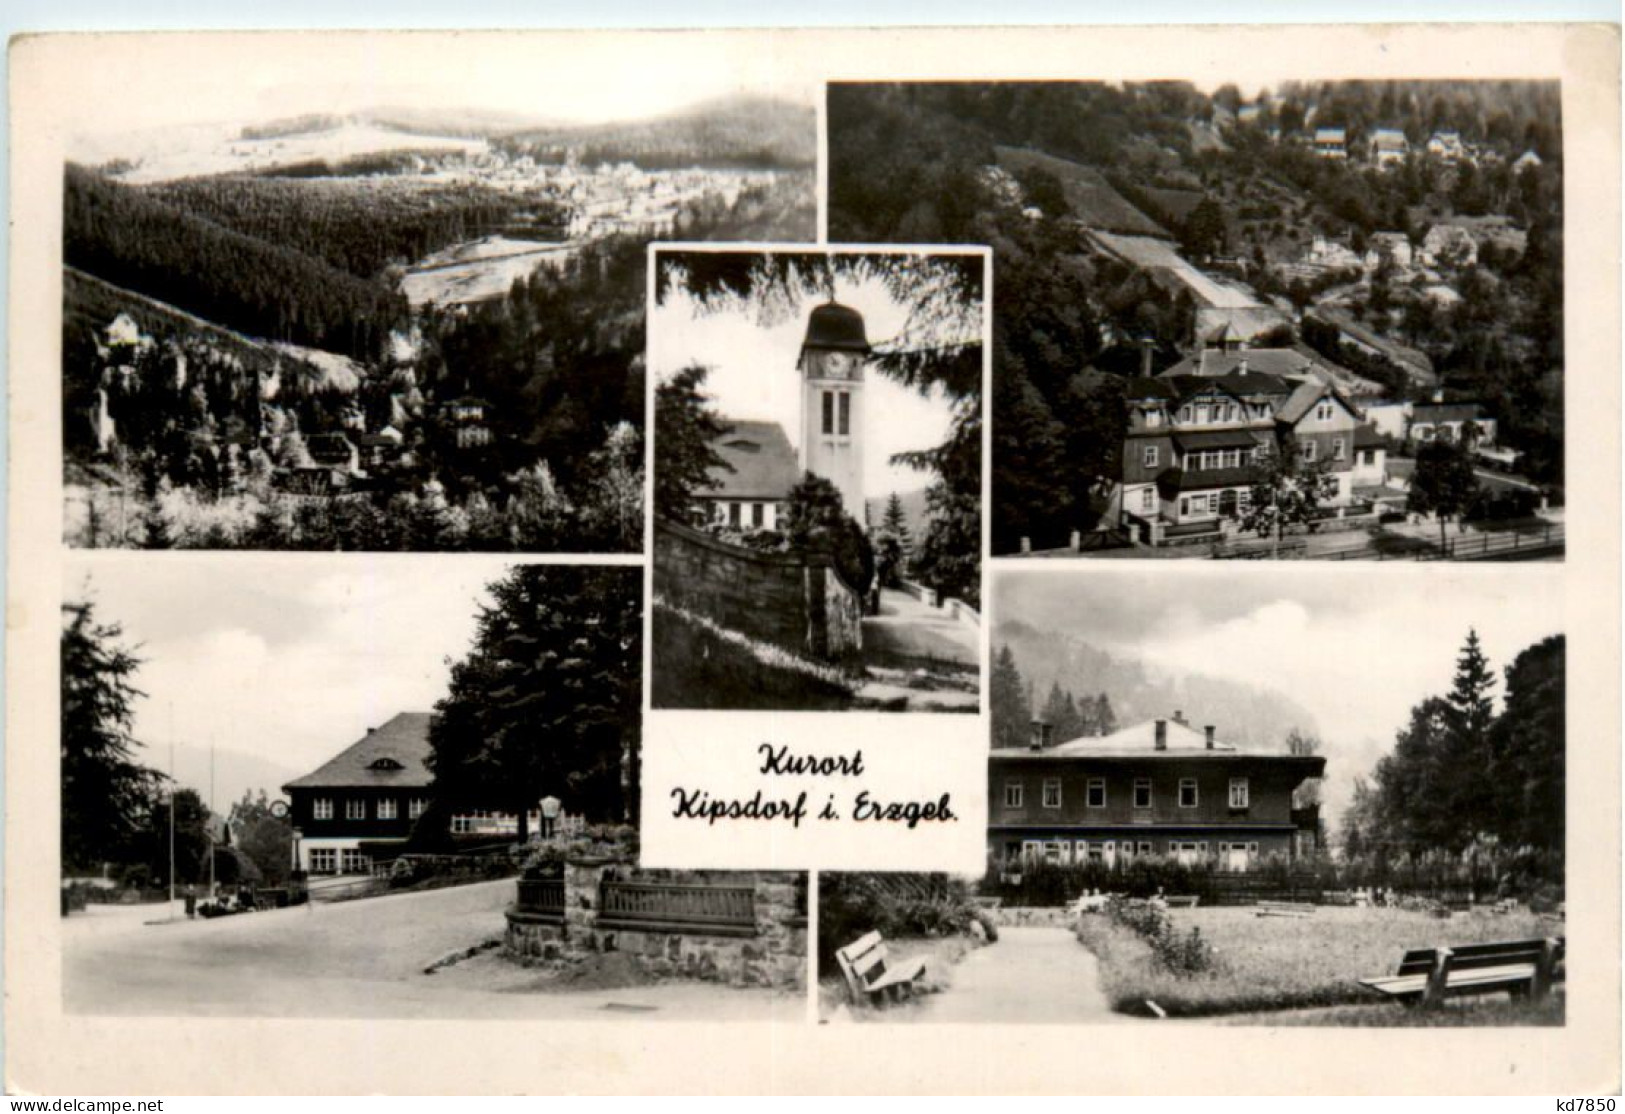 Kurort Kipsdorf I. Erzgeb., - Altenberg